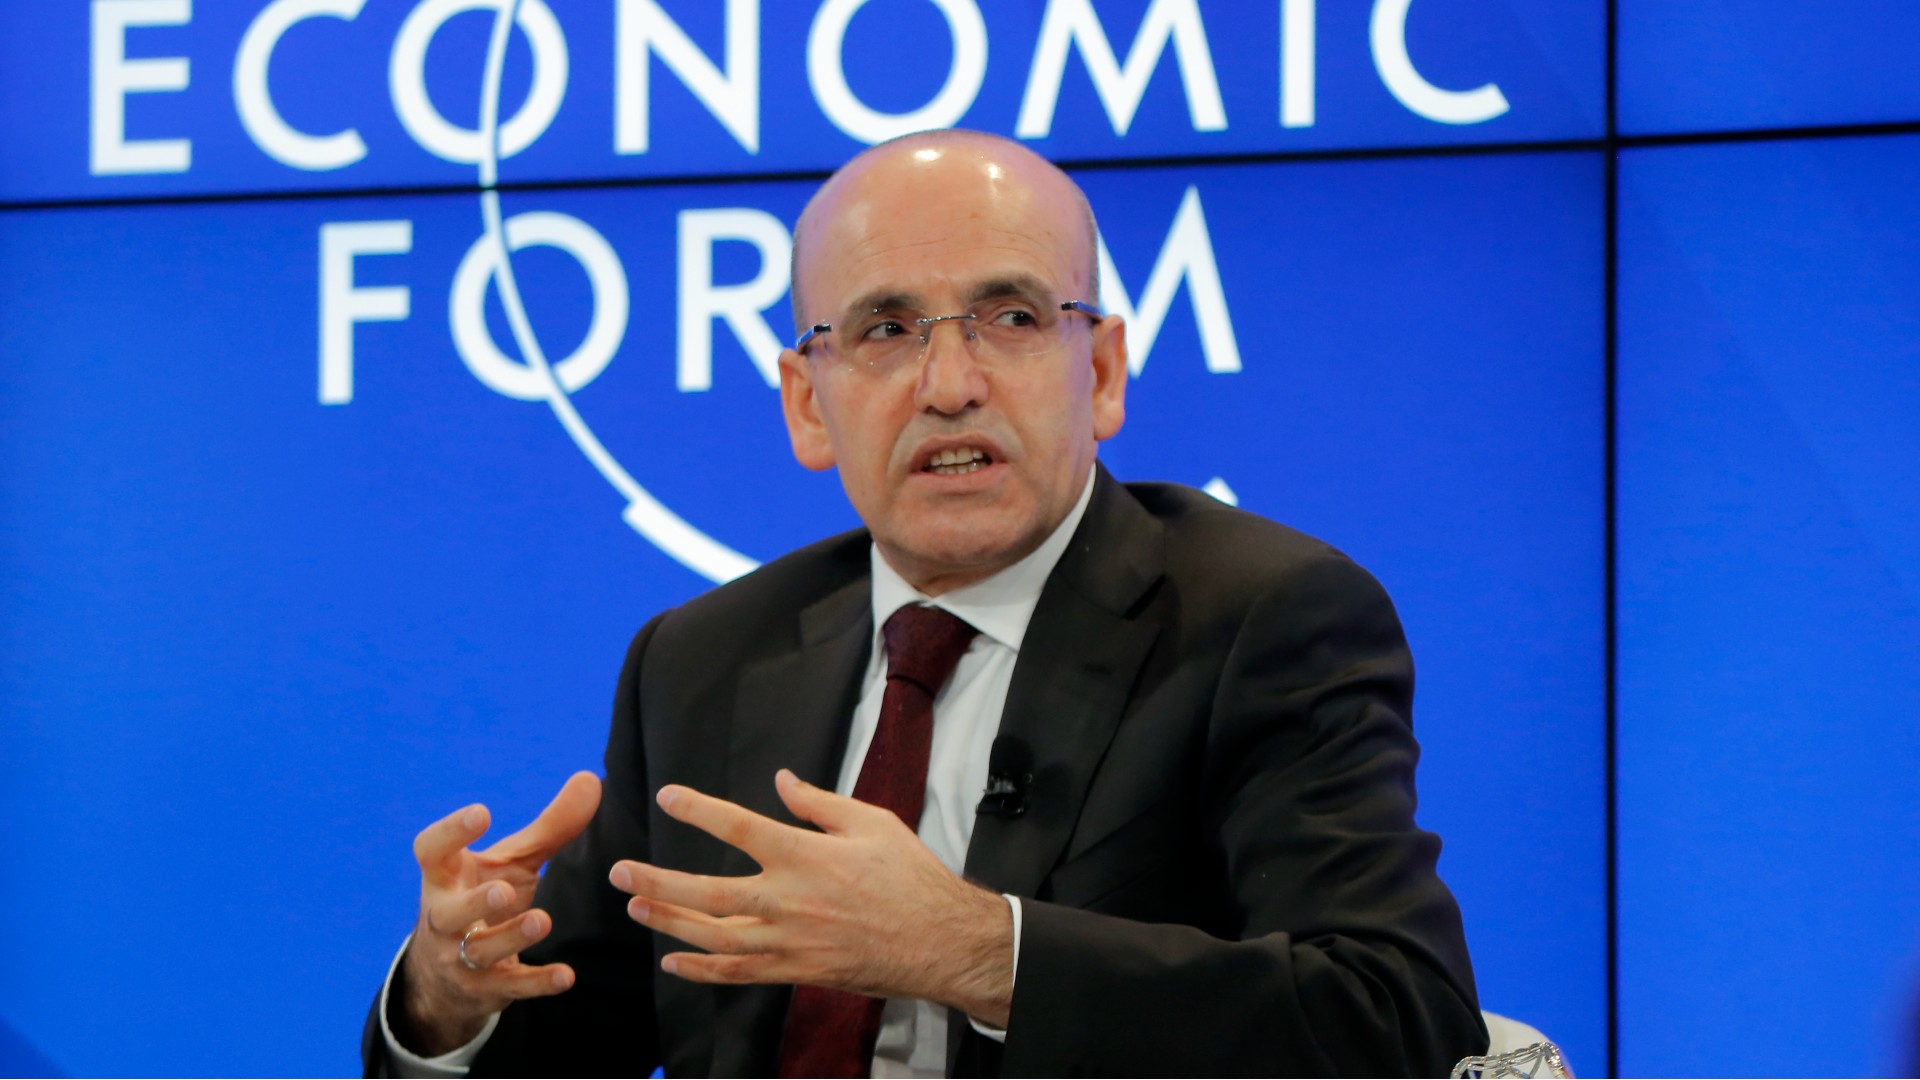 Mehmet Simsek speaks at the World Economic Forum in Davos in 2017 (AP)